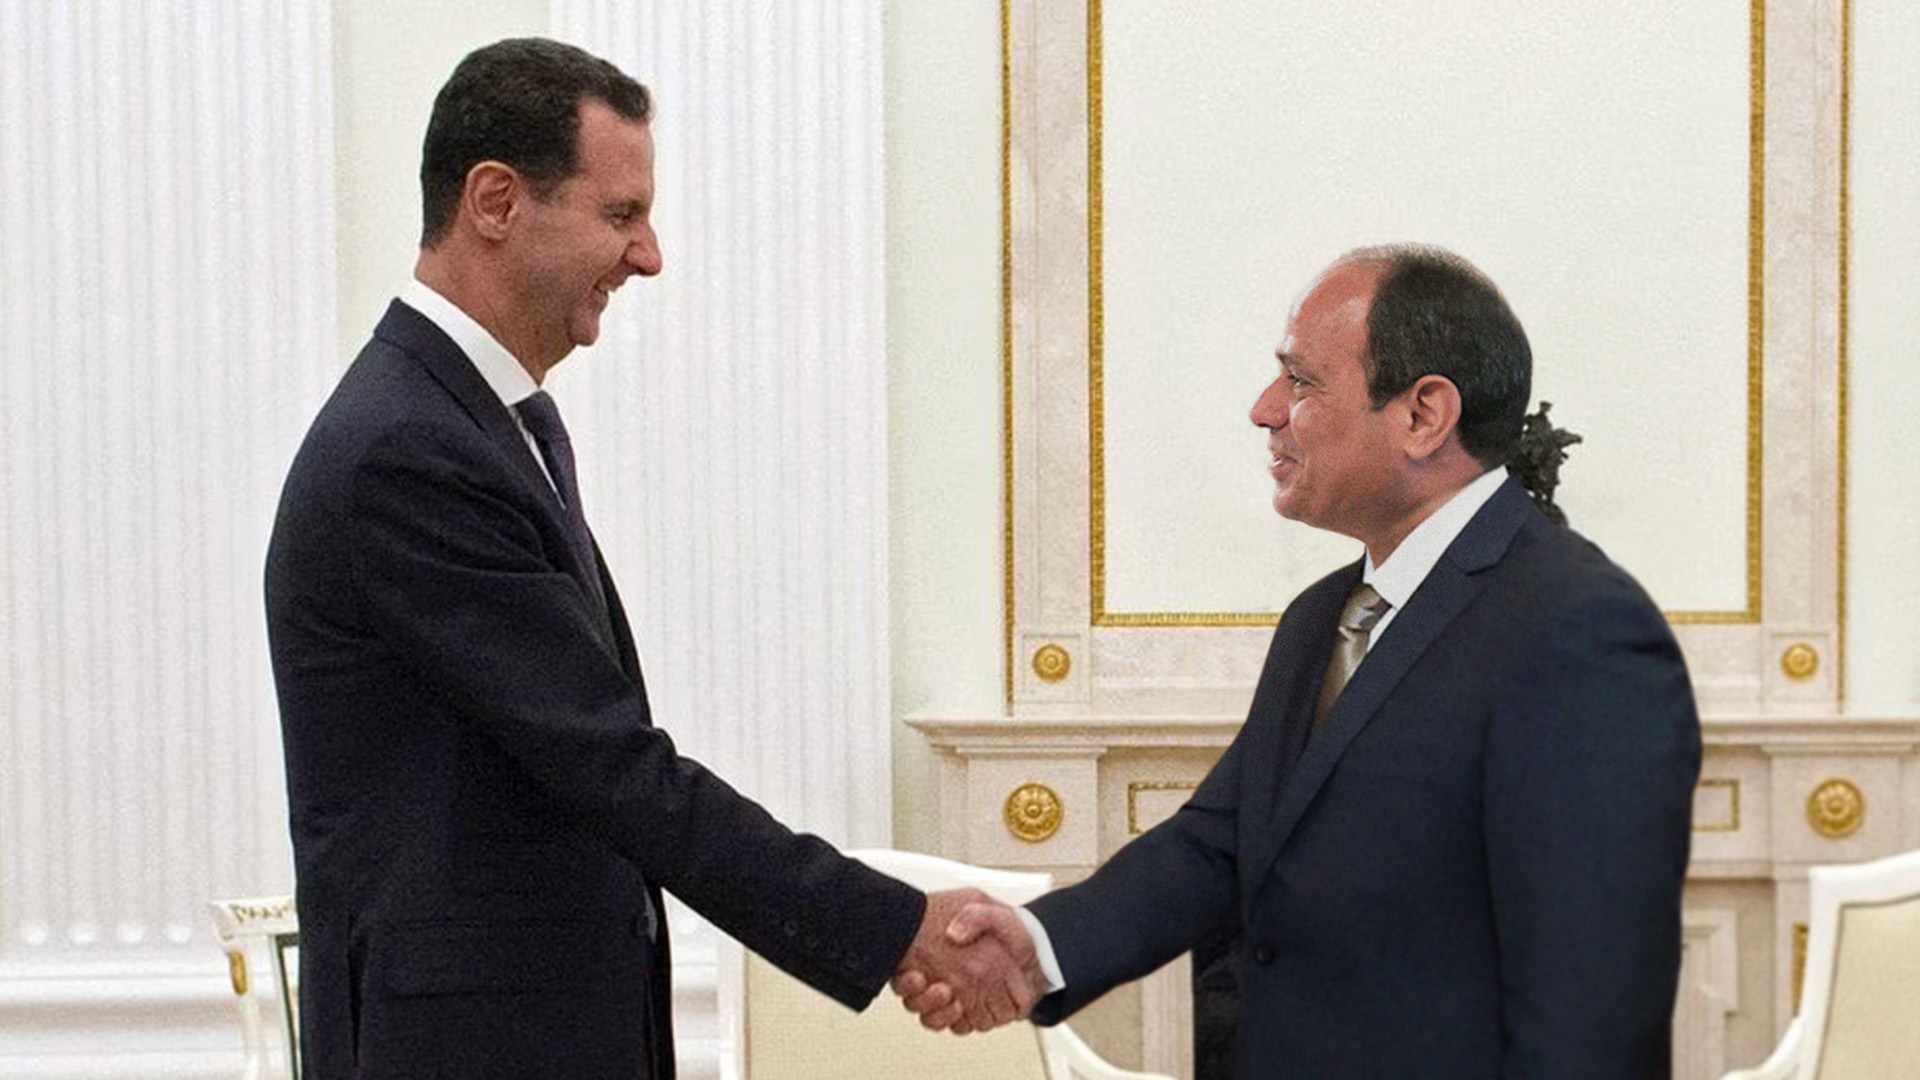 صورة السيسي يوقّع اتفاقية تبادل شبيحة مع النظام السوري